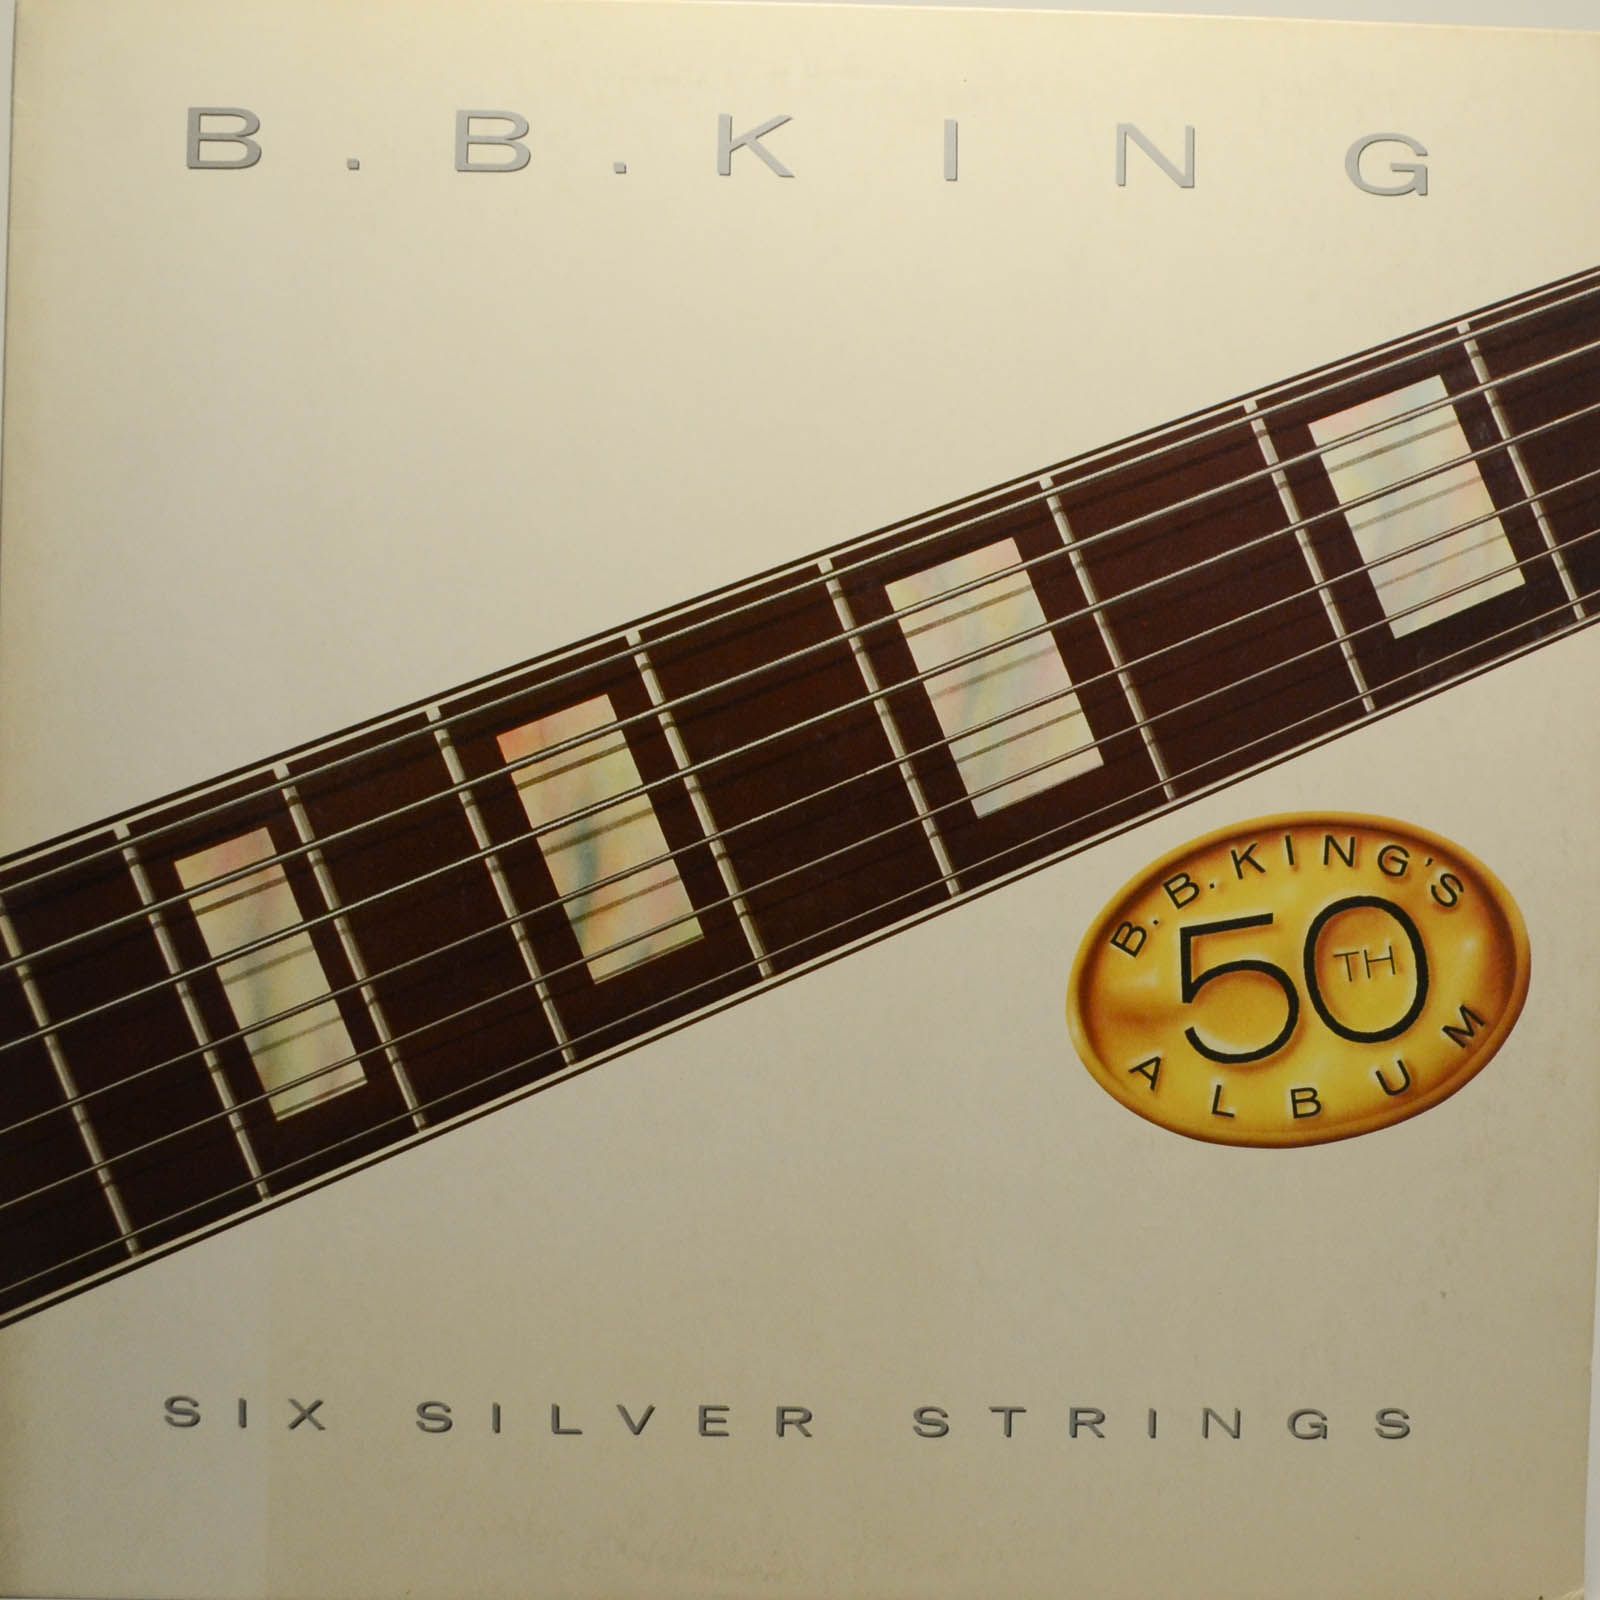 B.B. King — Six Silver Strings (B.B. King's 50th Album), 1986